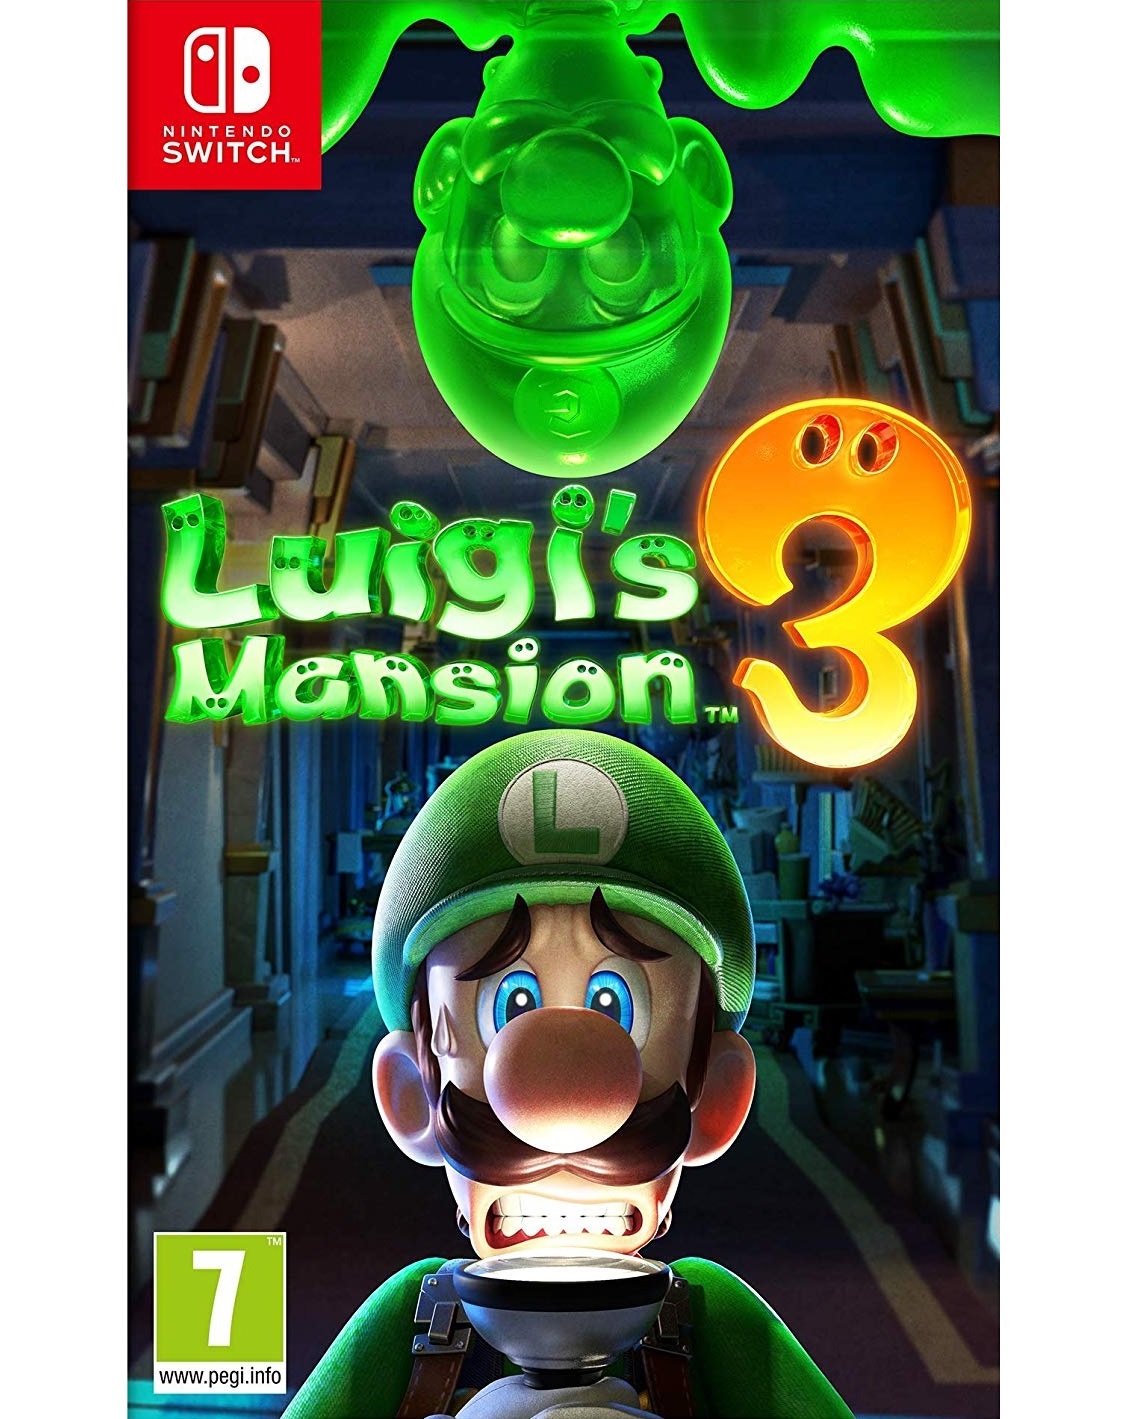 Luigi's Mansion 3 - Switch